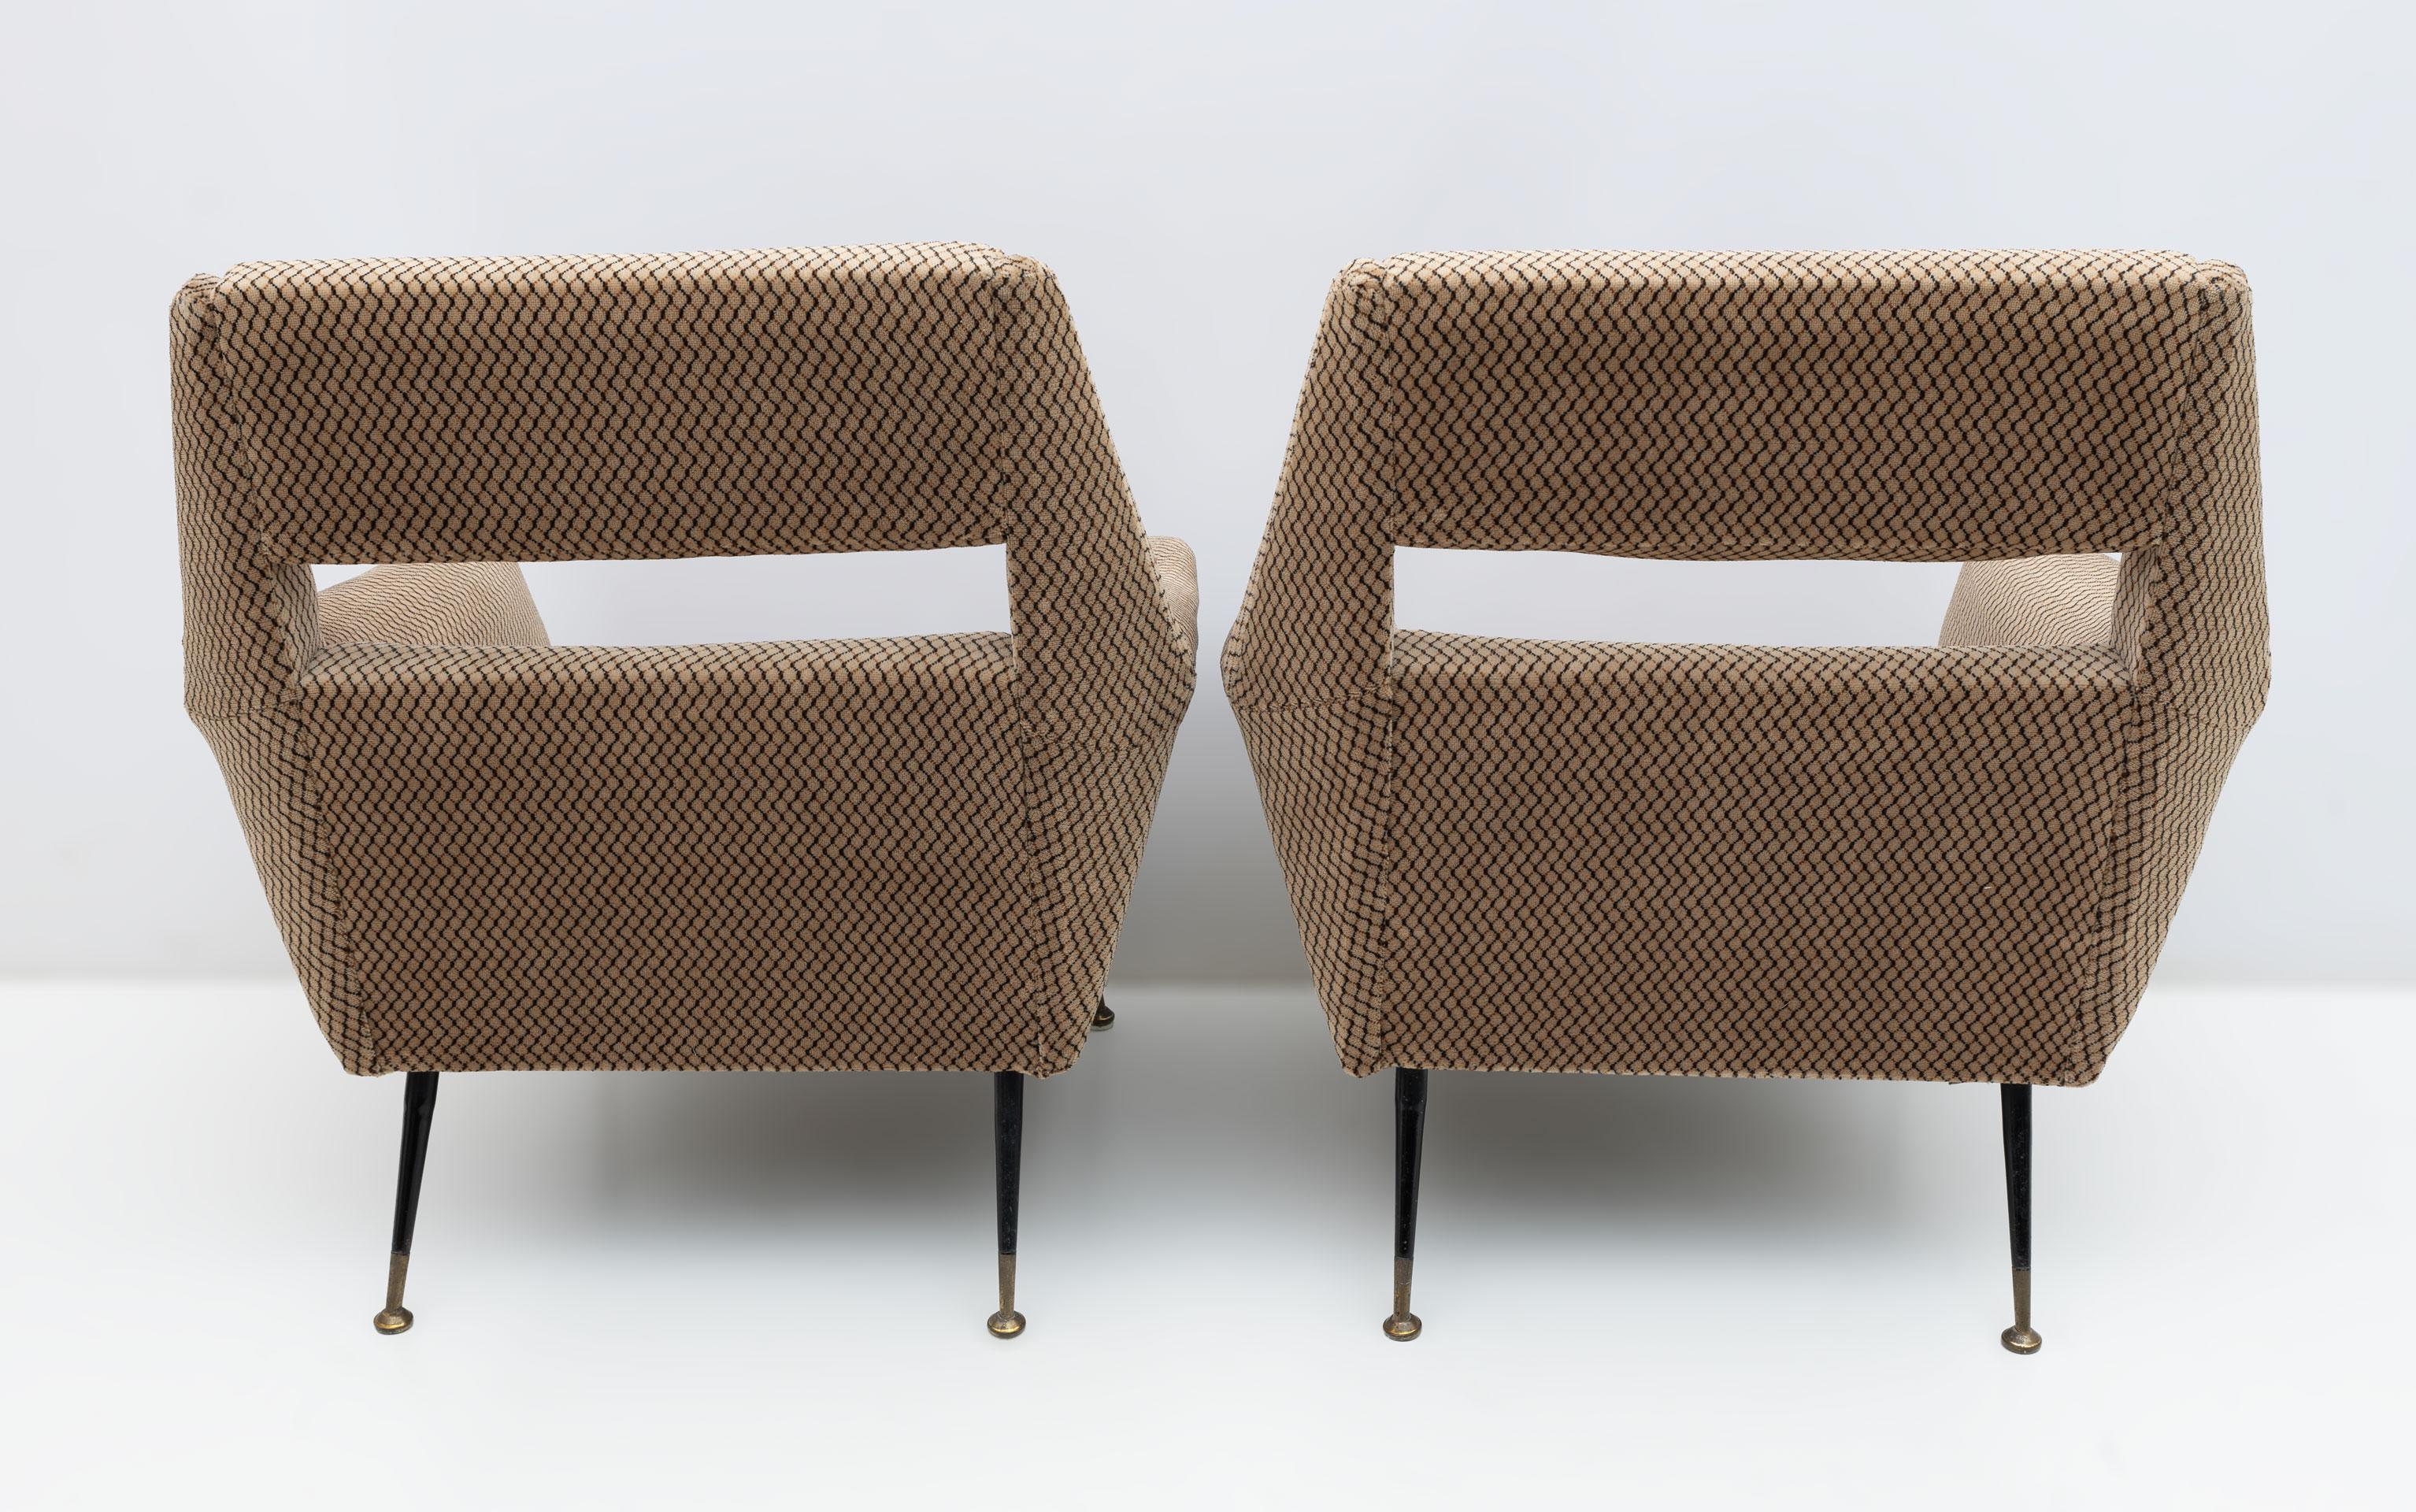 Paire de fauteuils avec structure en bois, revêtement en tissu, supports en laiton et métal laqué.
Conçu par Gigi Radice et produit par Minotti, Italie, vers 1950.
Sellerie d'origine en velours mais usée, une nouvelle sellerie est recommandée.